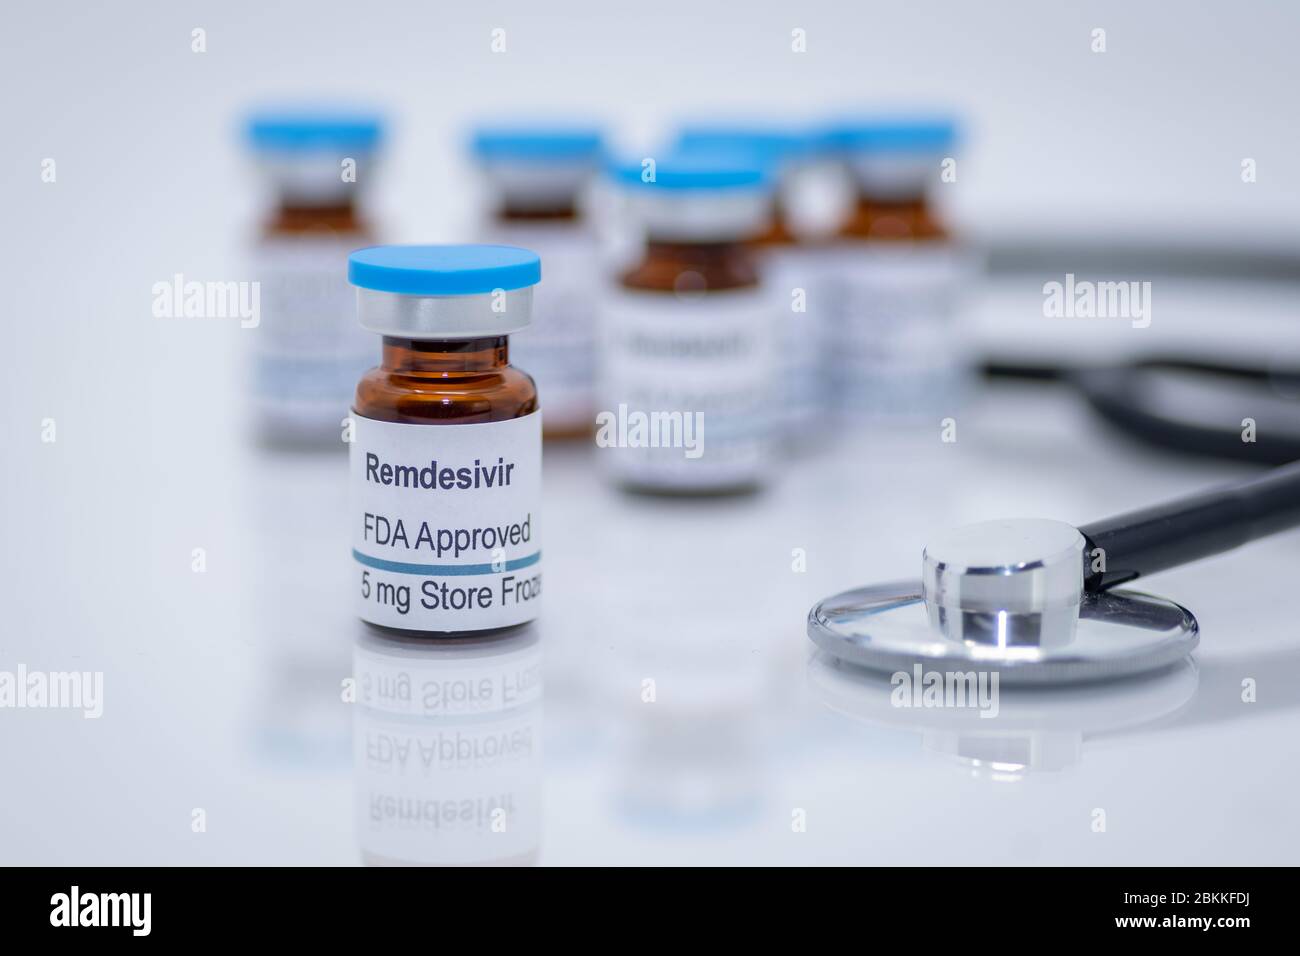 Remdesivir farmaco antivirale approvato dalla FDA per il trattamento di nuovi coronavirus COVID-19 pandemic Foto Stock